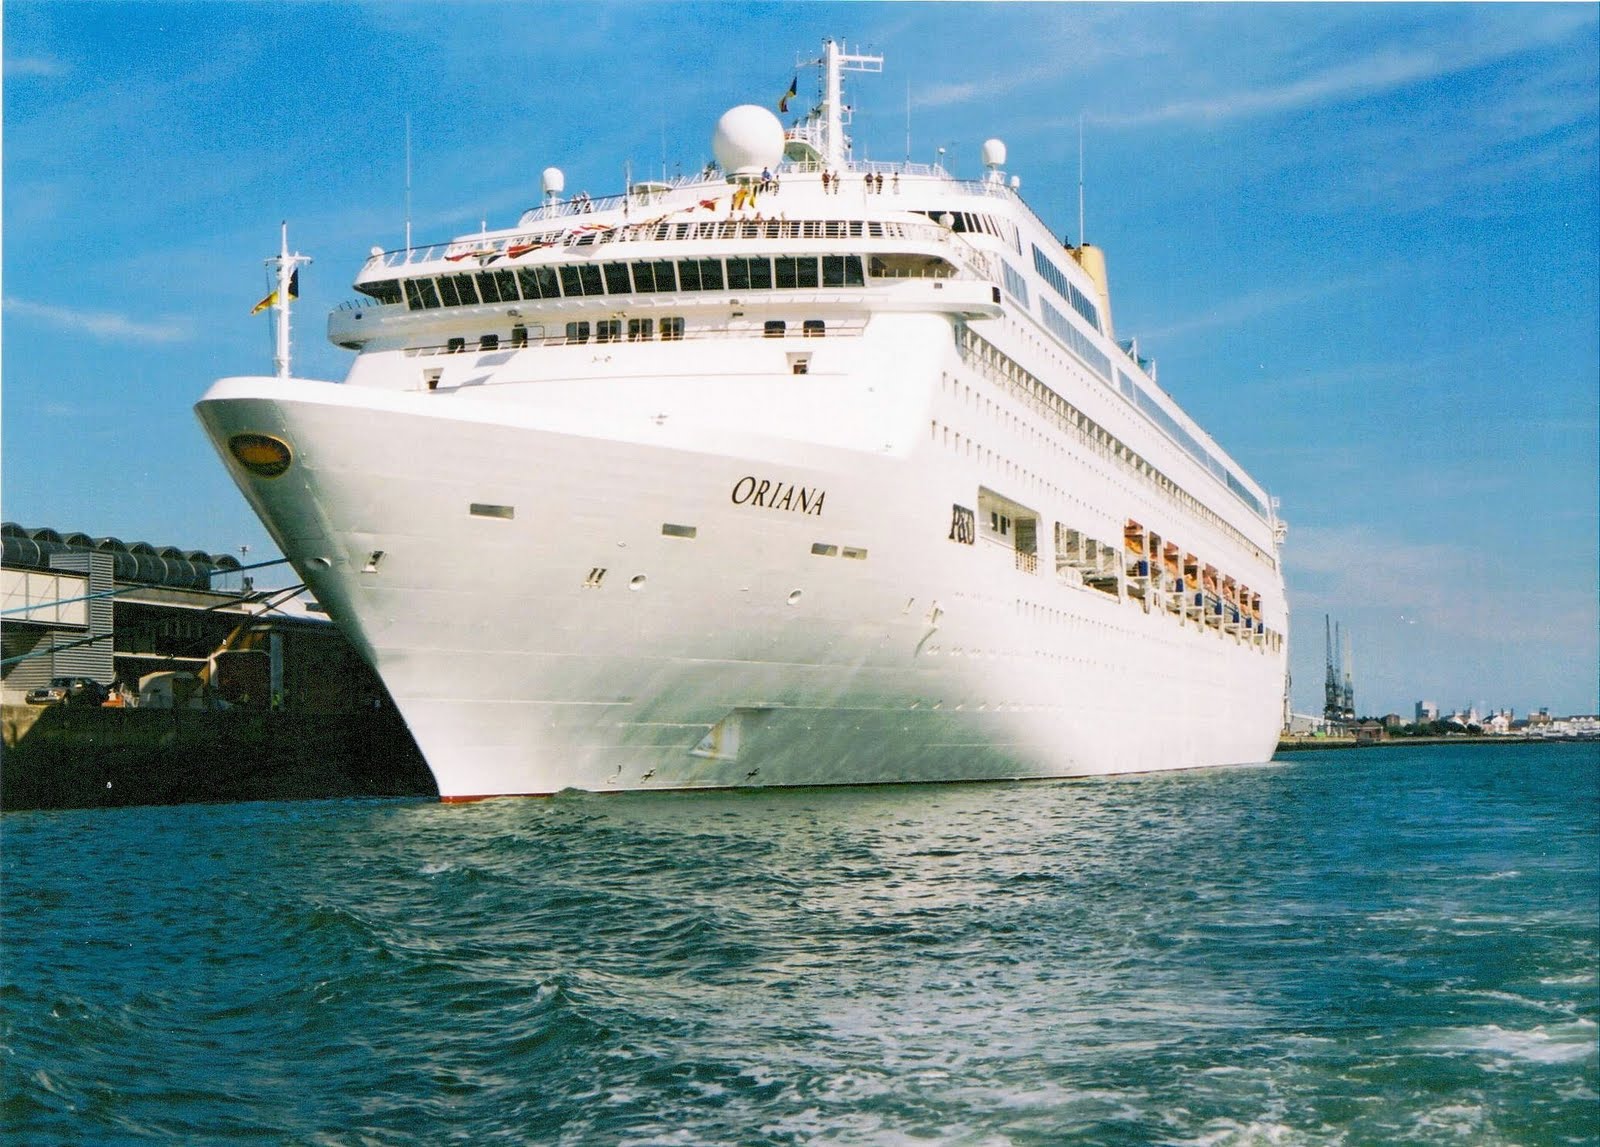 when the cruise ship oriana comes into port